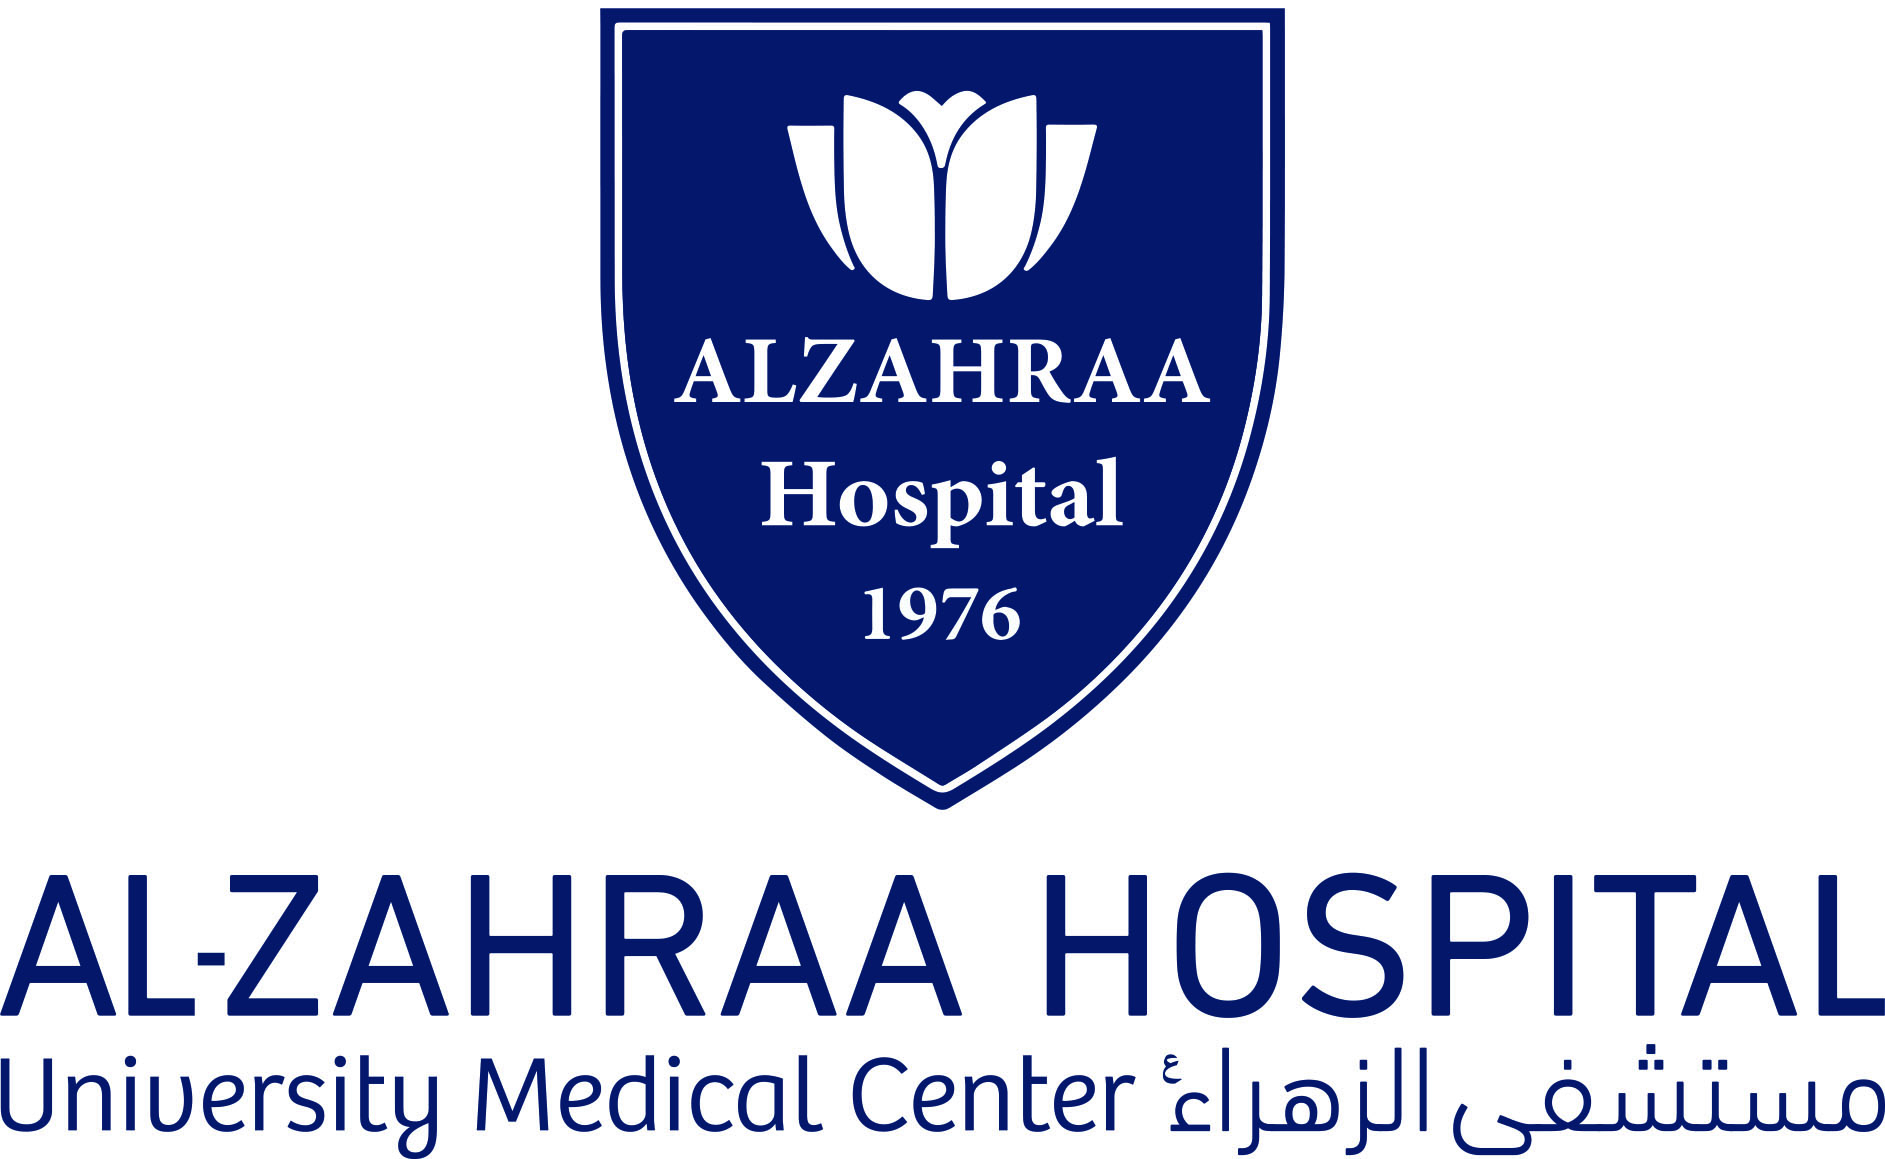 Hospital Name and Logo - Al Zahraa Hospital University Medical Center